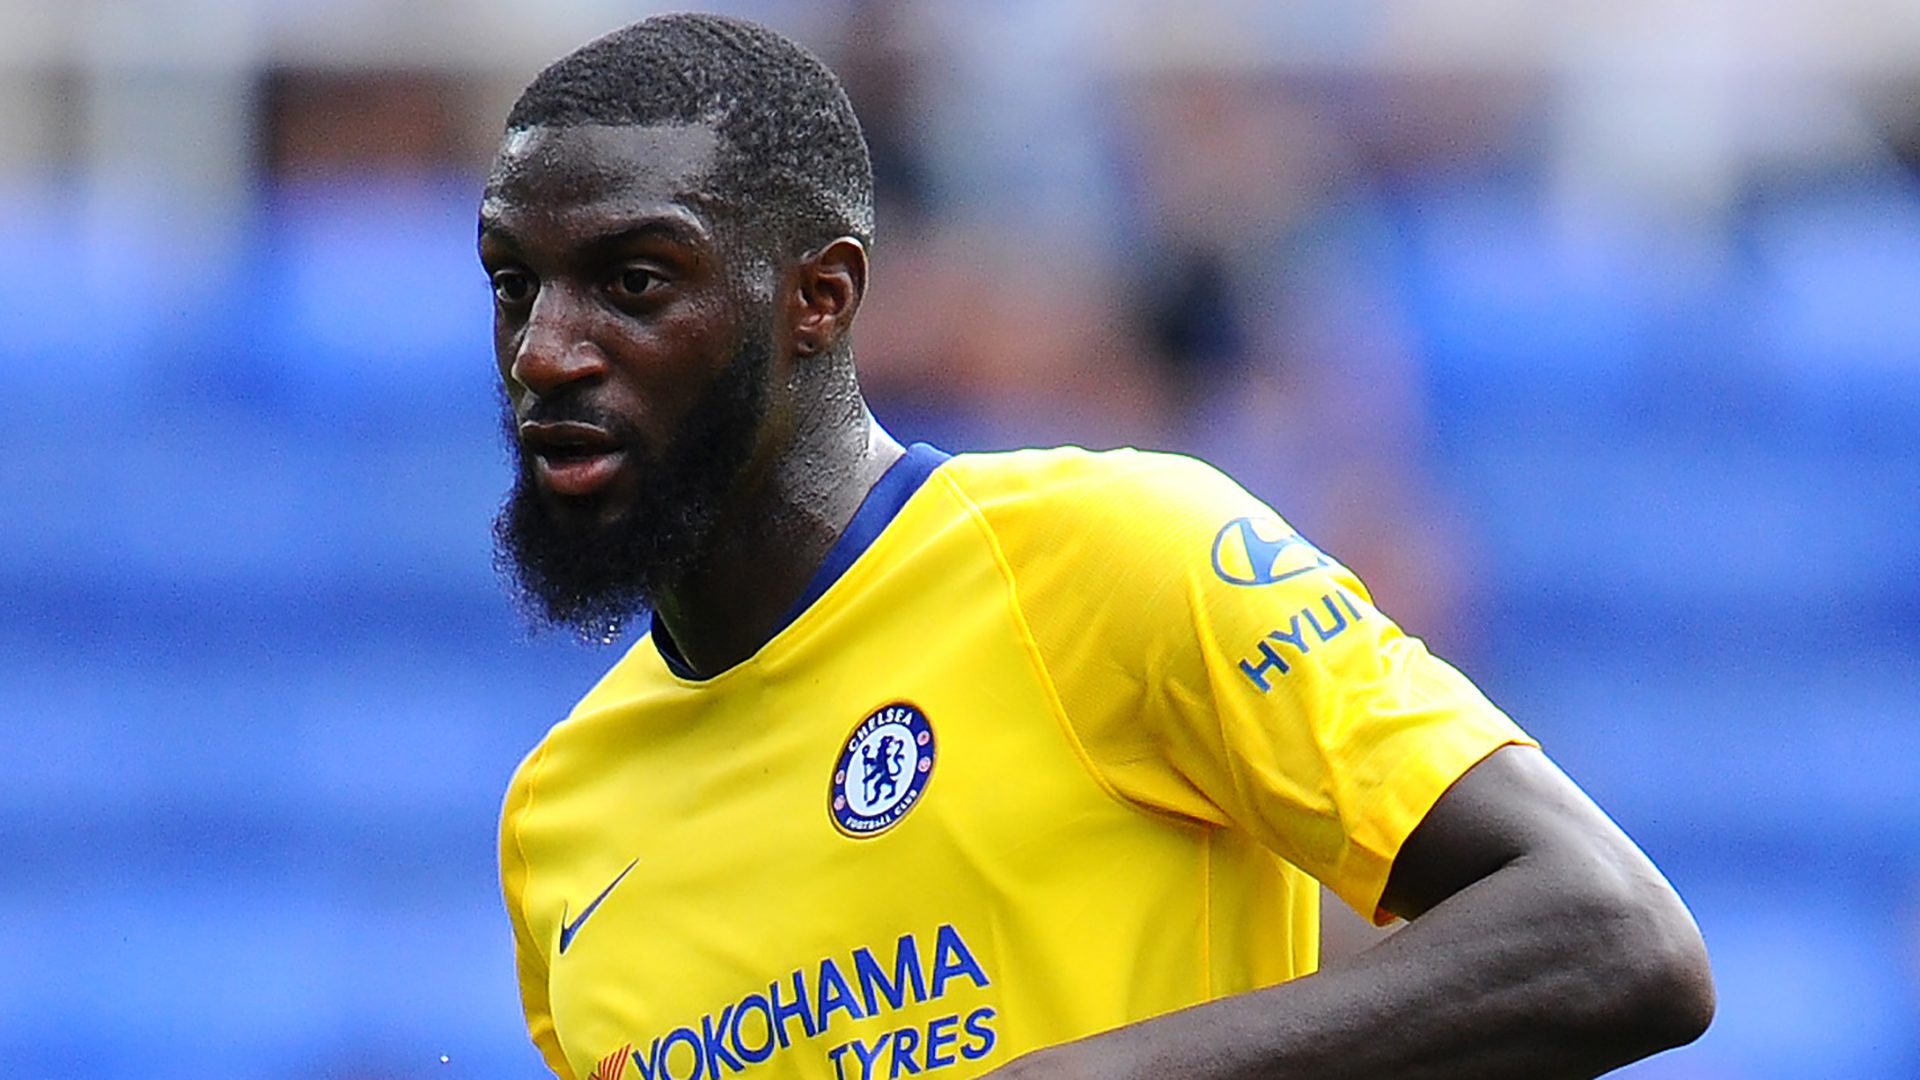 Le PSG poursuit ses discussions avec Chelsea pour un prêt de Bakayoko